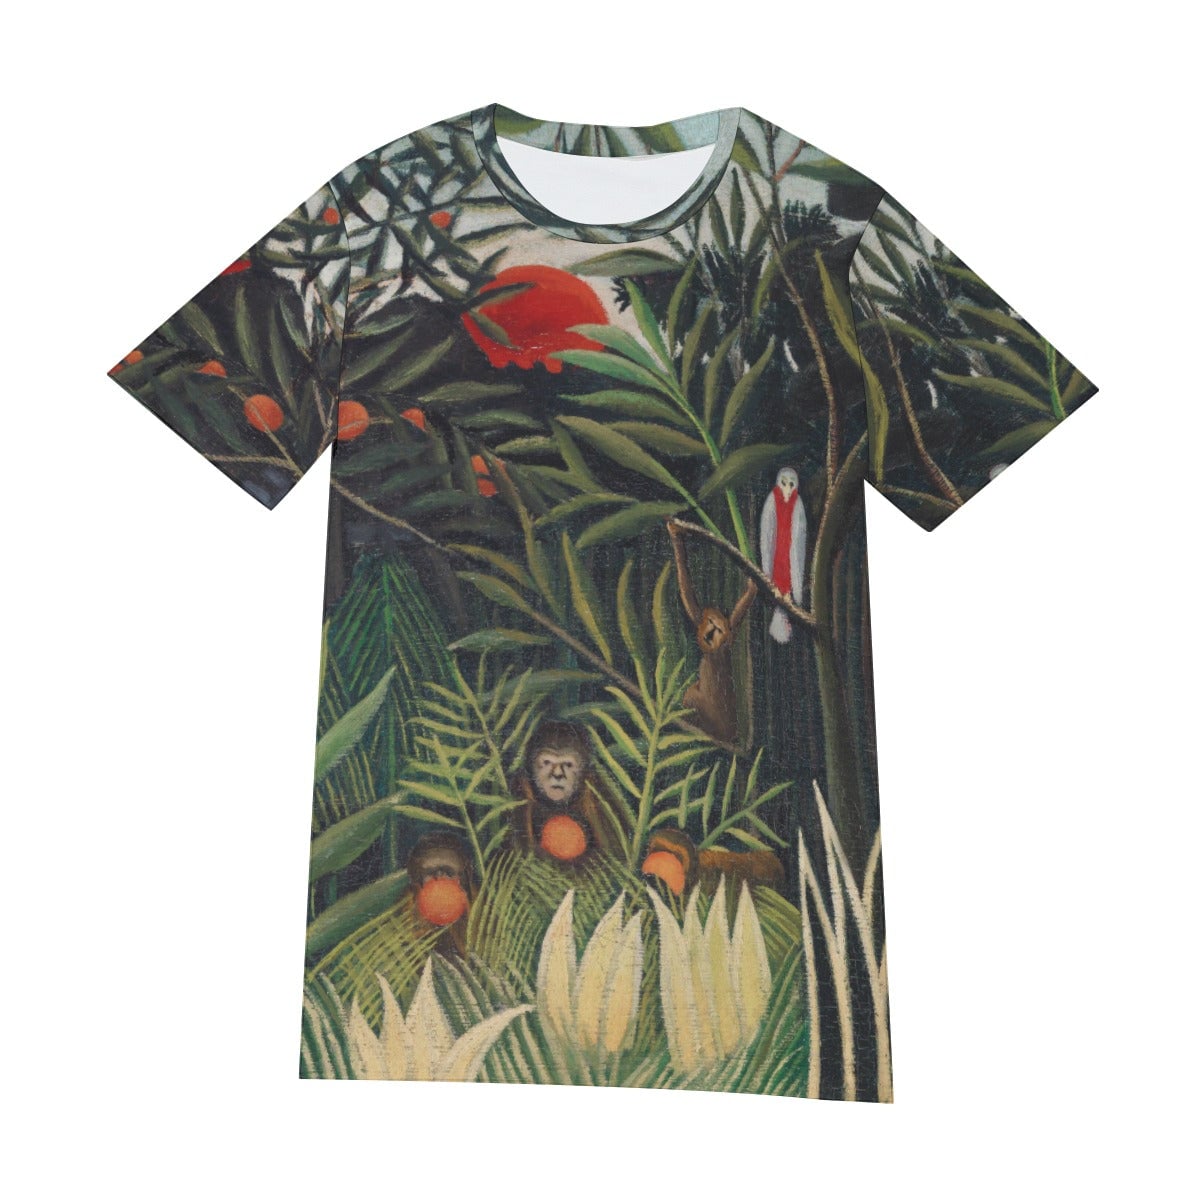 Henri Rousseau’s Monkeys and Parrot T-Shirt - Famous Art Tee